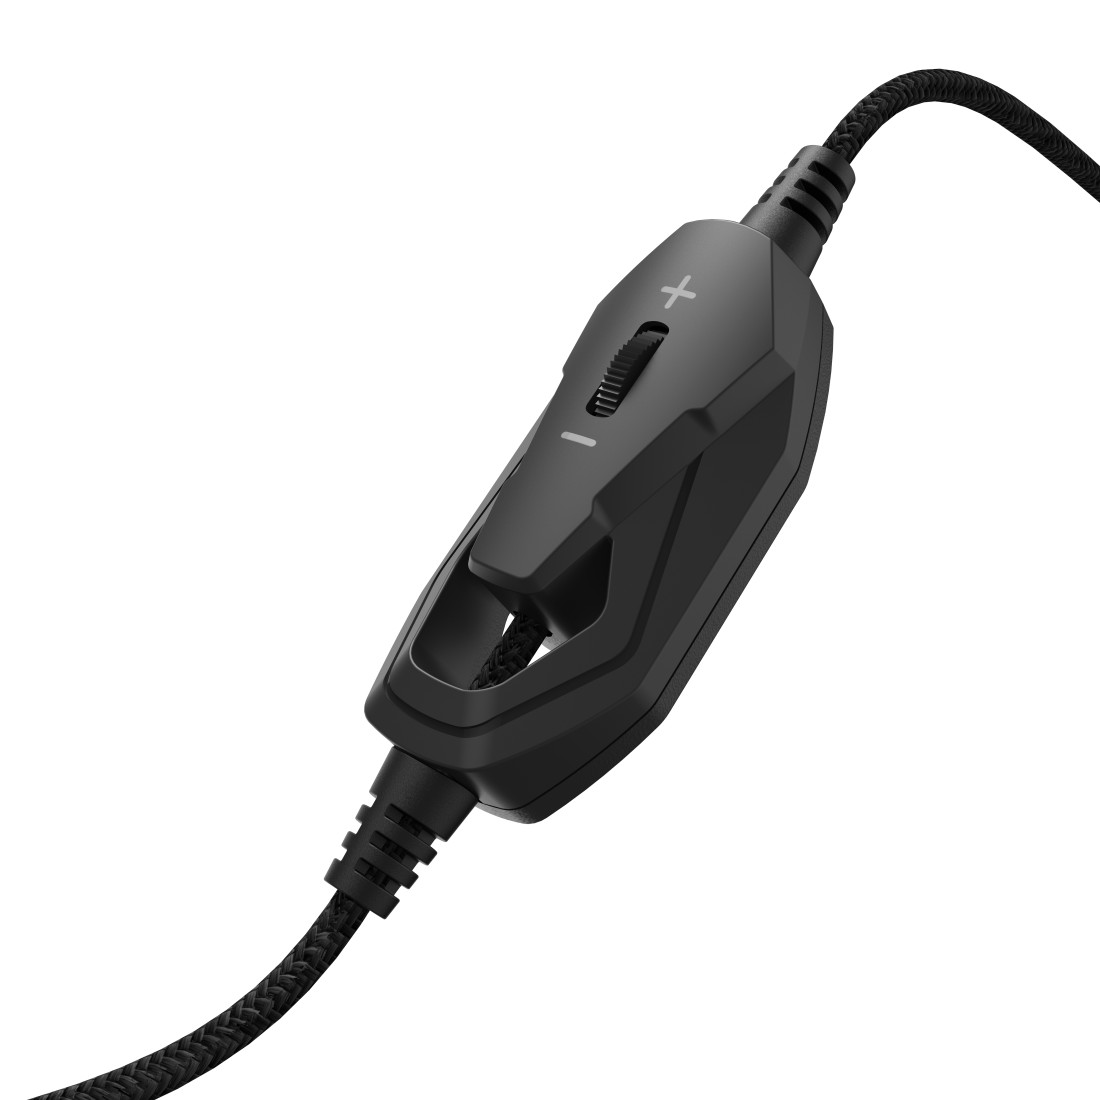 Gaming SoundZ 330, Headset Over-ear Schwarz/Grün uRage